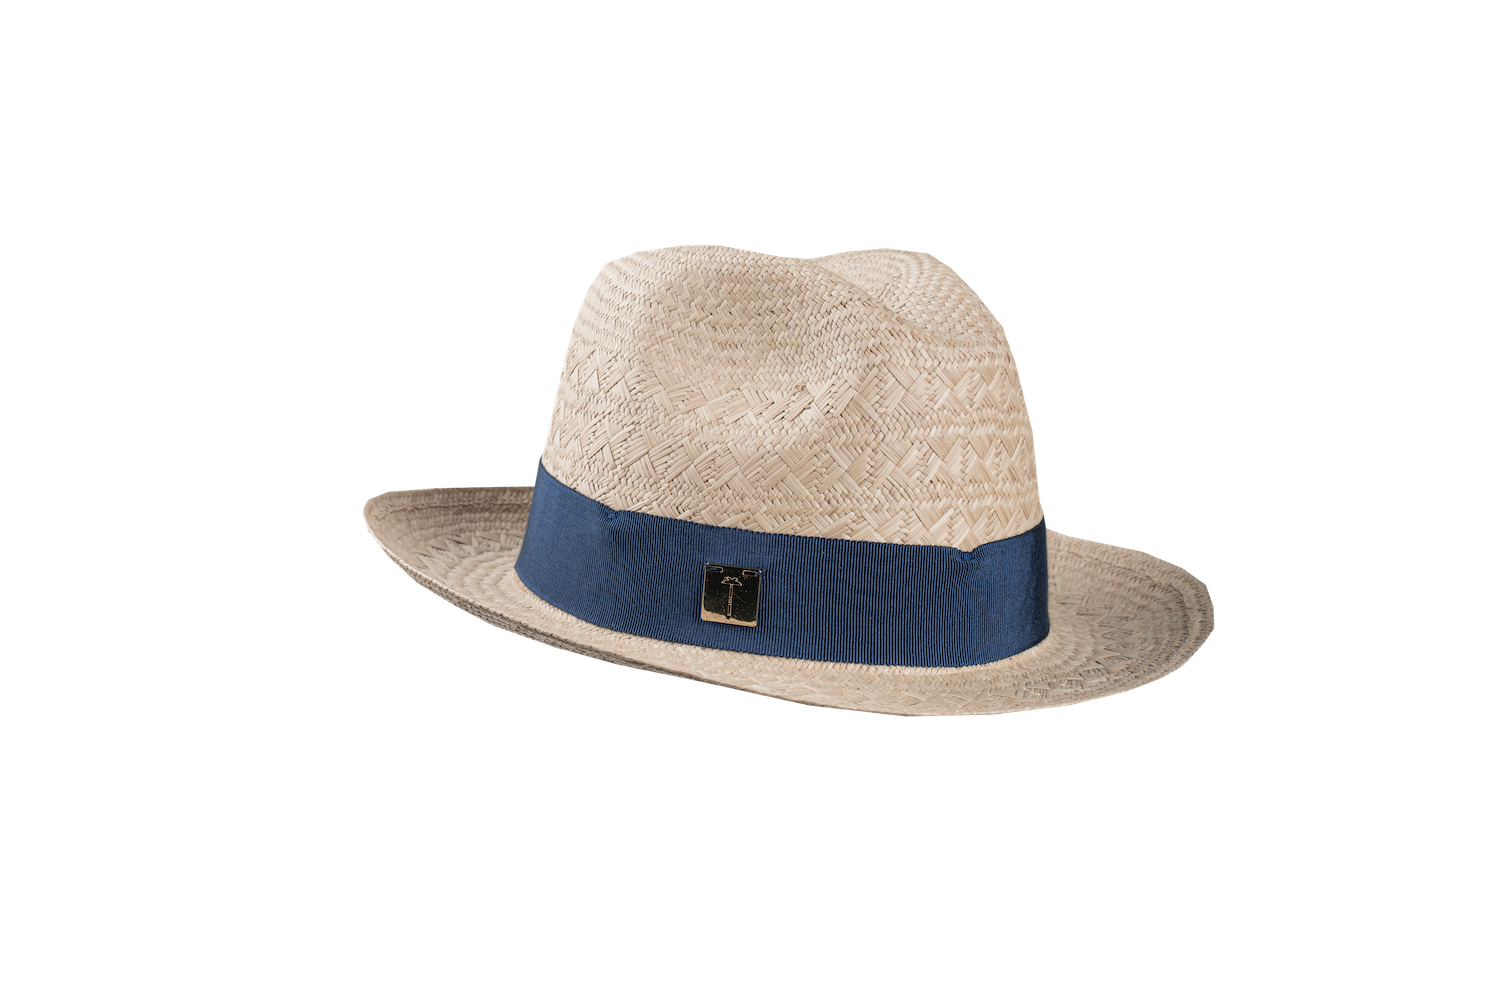 BOSSA - chapeau de paille bleu marine - marque française tatiane de fretias